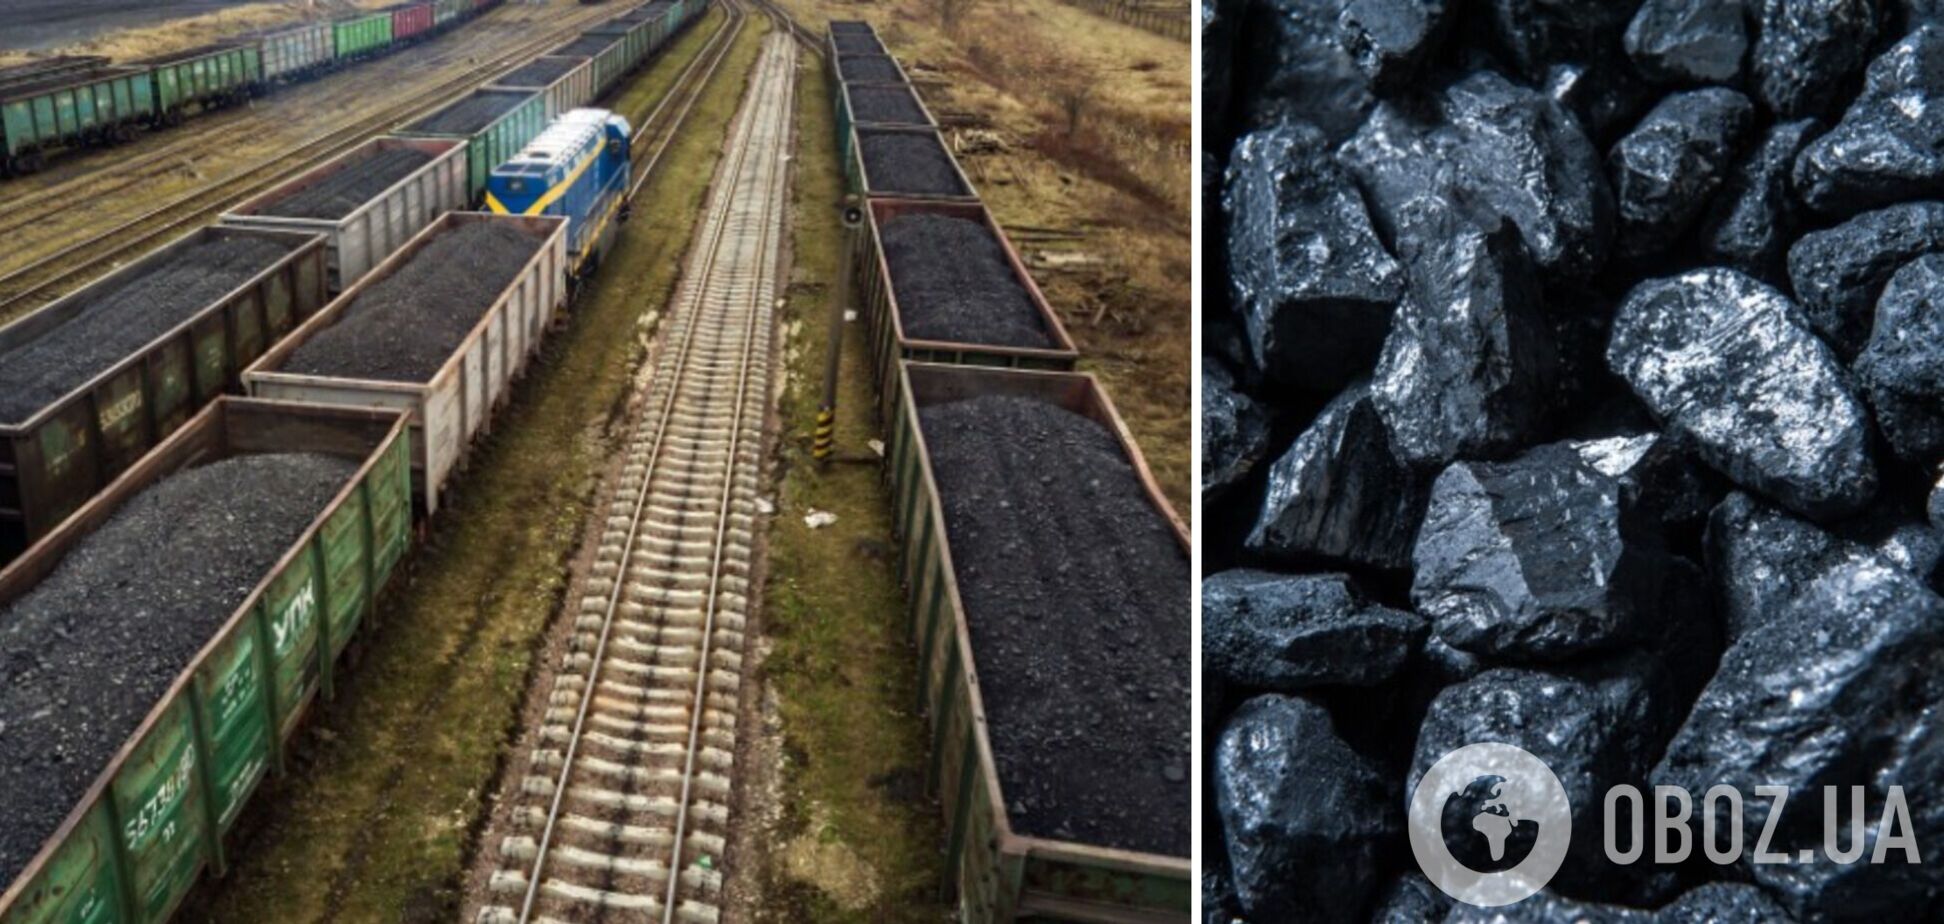 ДТЭК увеличил импорт угля до 400 тыс. тонн для стабильного прохождения зимы